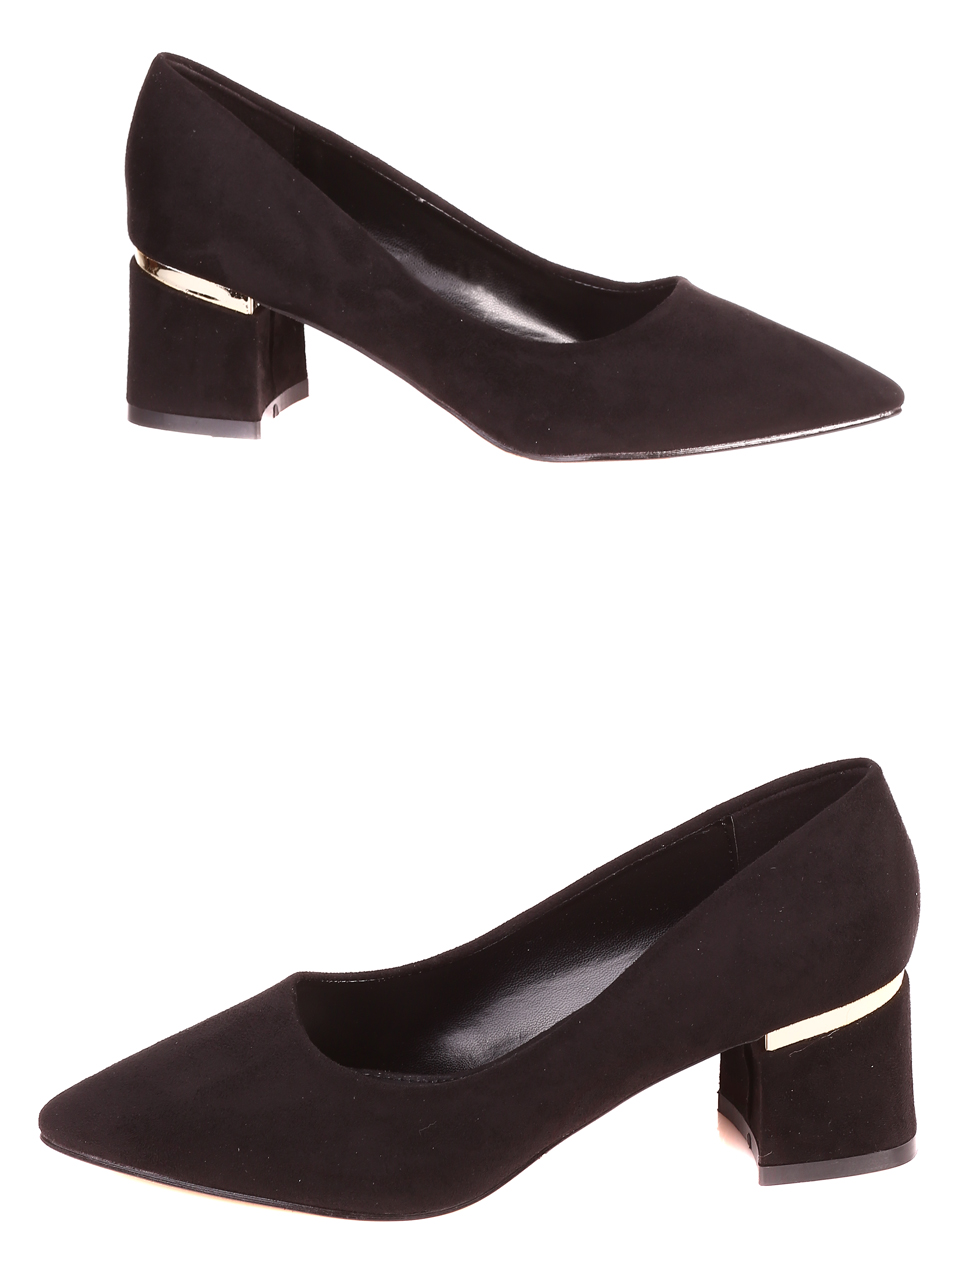 Елегантни дамски обувки на ток в черно 3M-21817 black mf